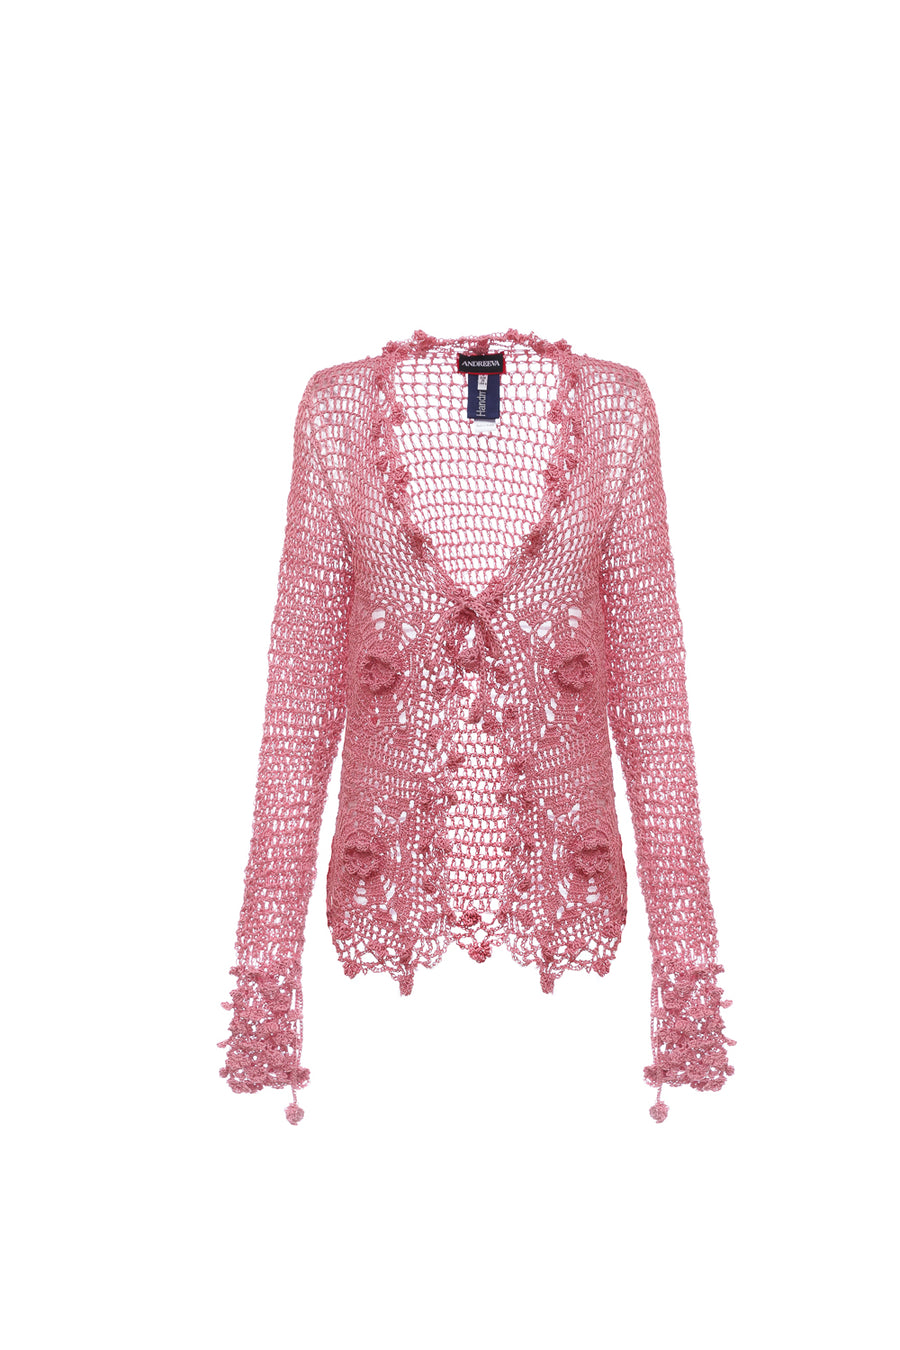 andreeva pink handmade crochet shirt